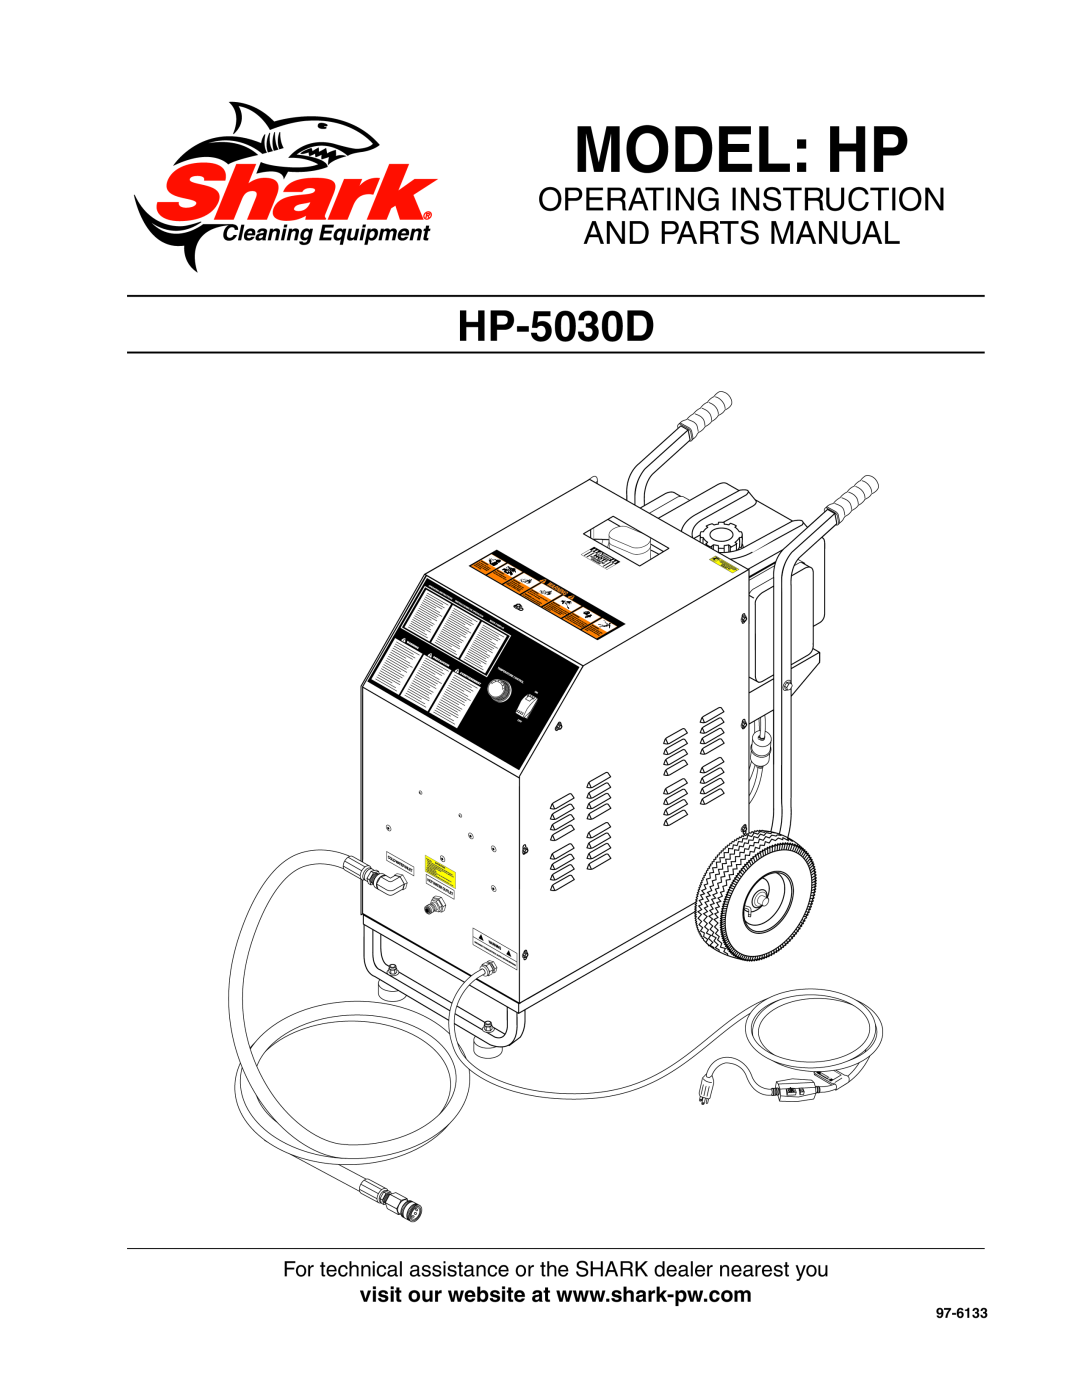 Shark HP-5030D manual Model HP, operating instruction and parts manual, 97-6133 